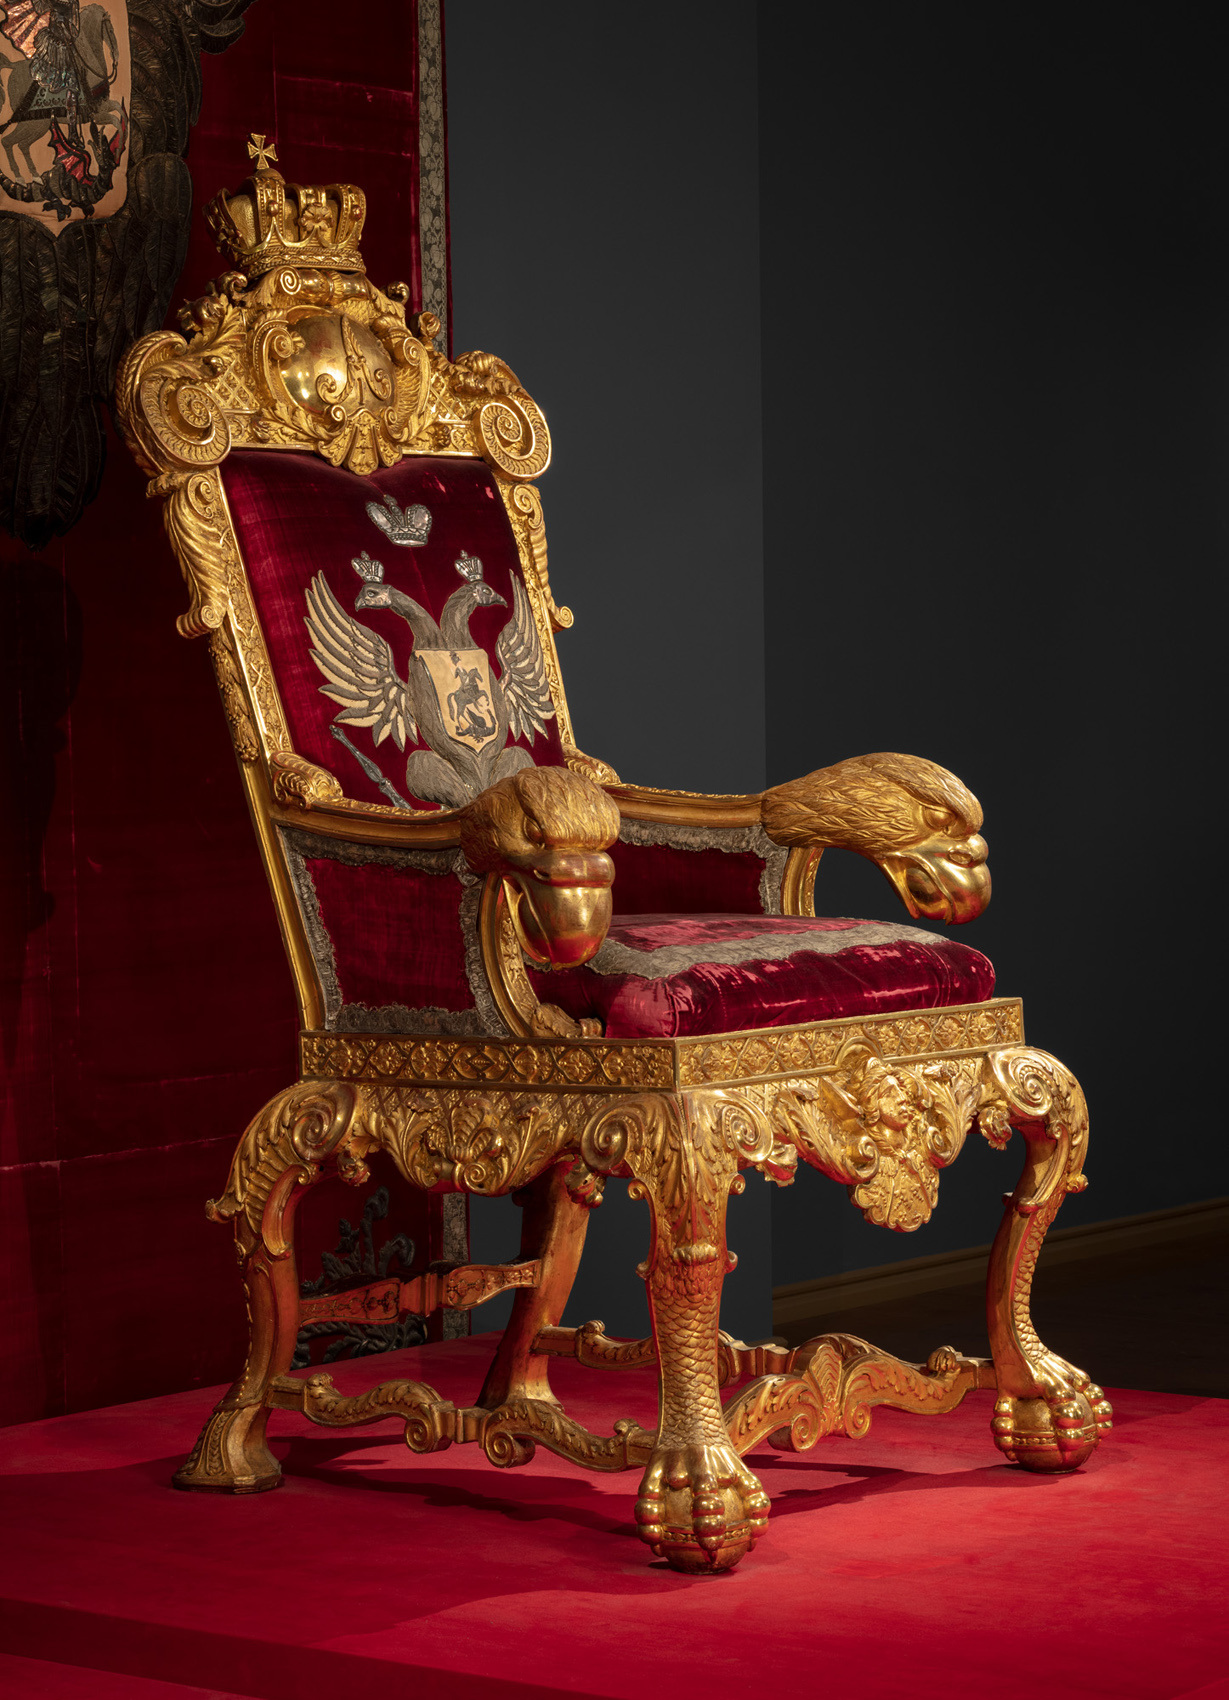 Emperor’s throne